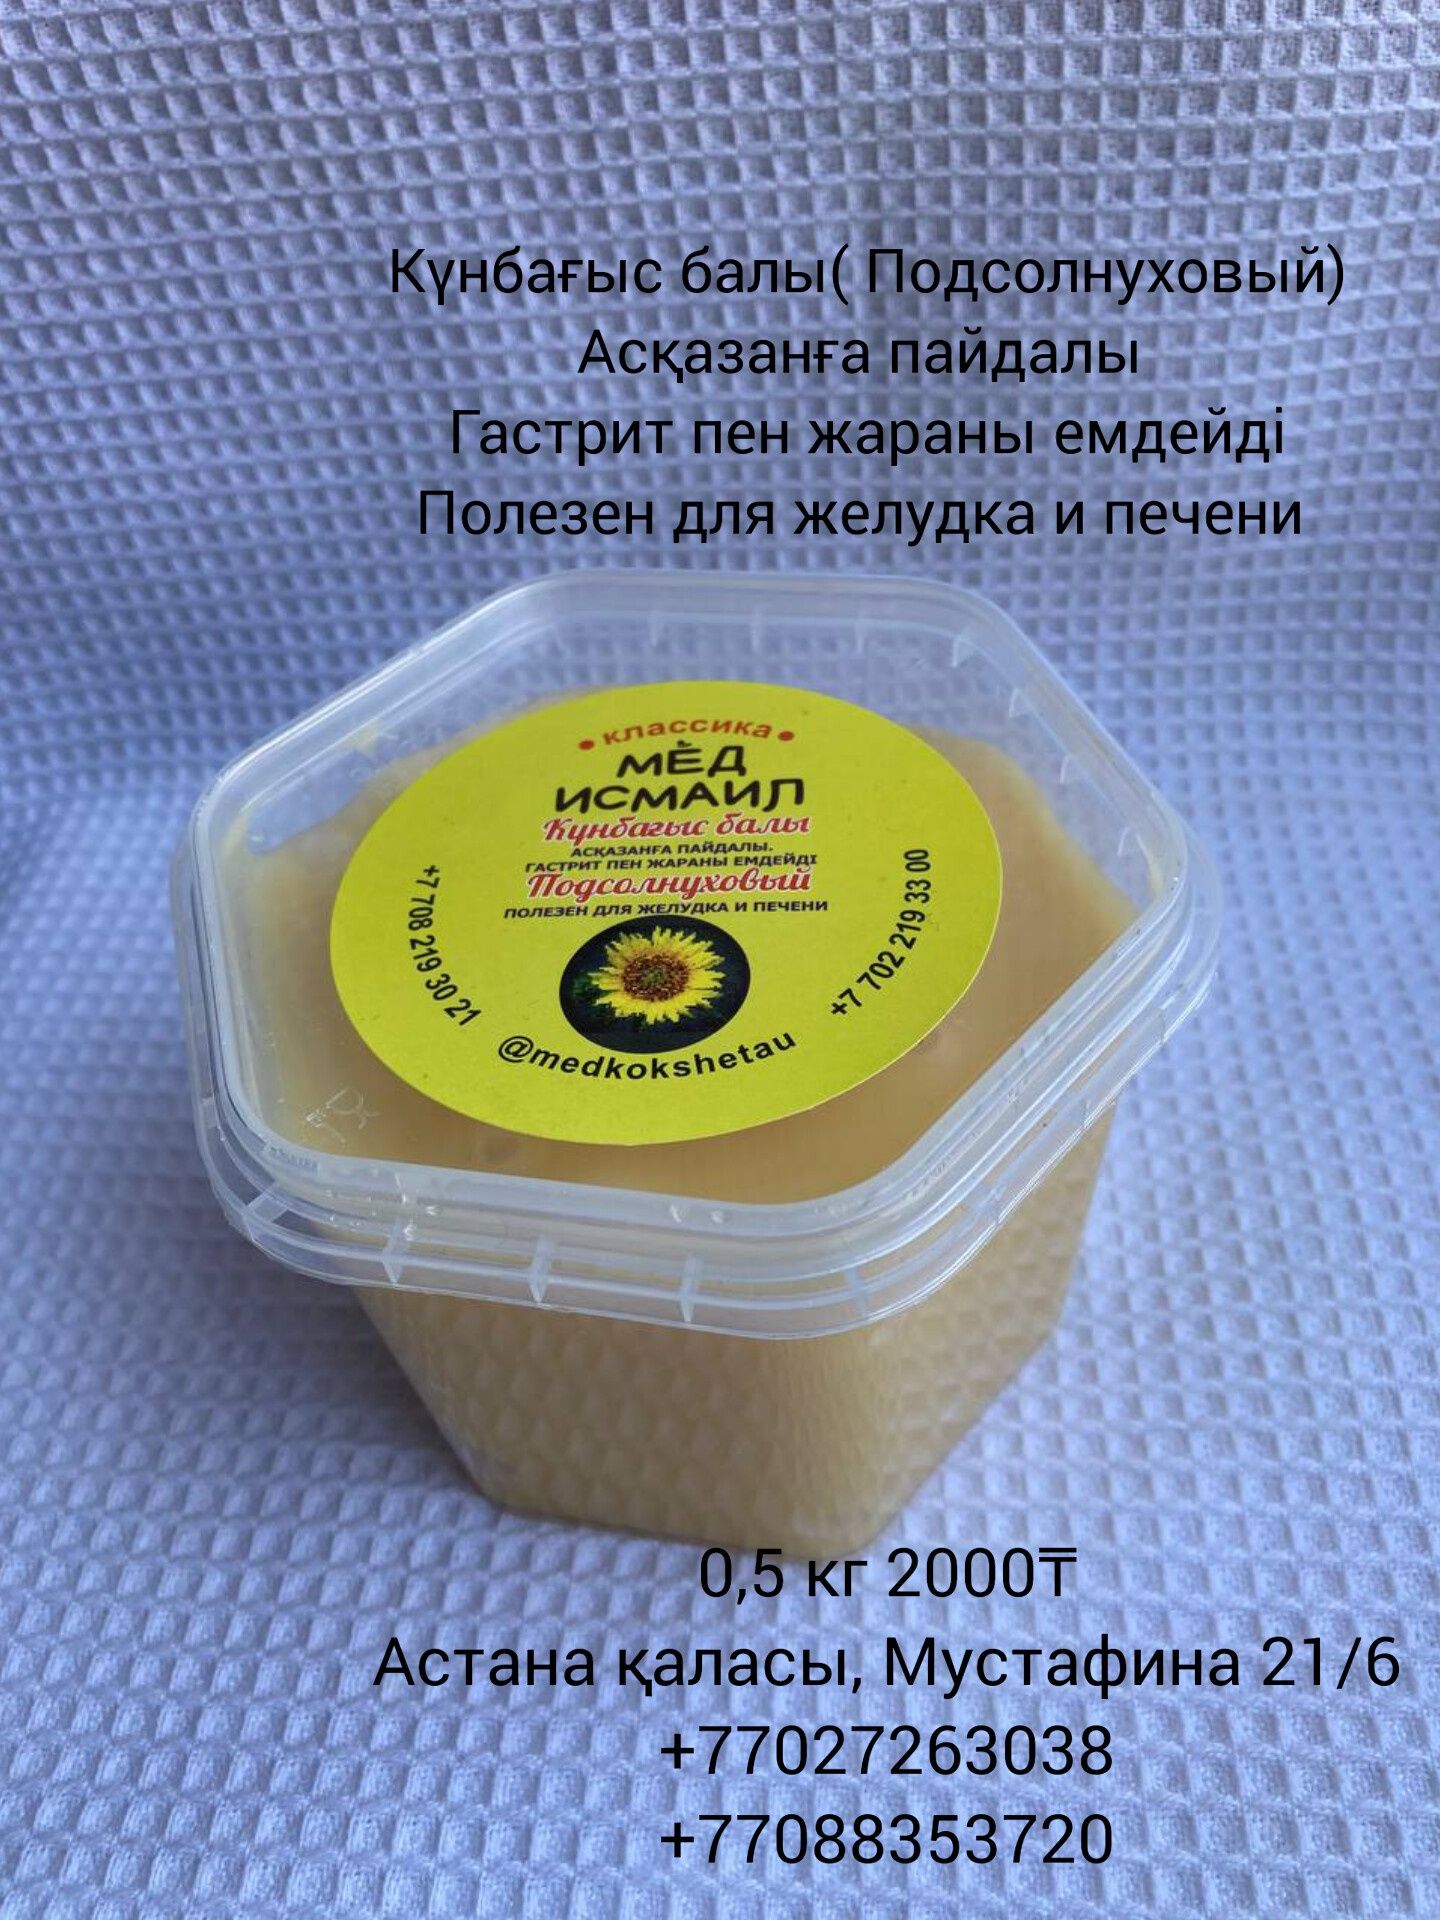 Бал Исмаил Күнбағыс балы(мёд подсолнечный)